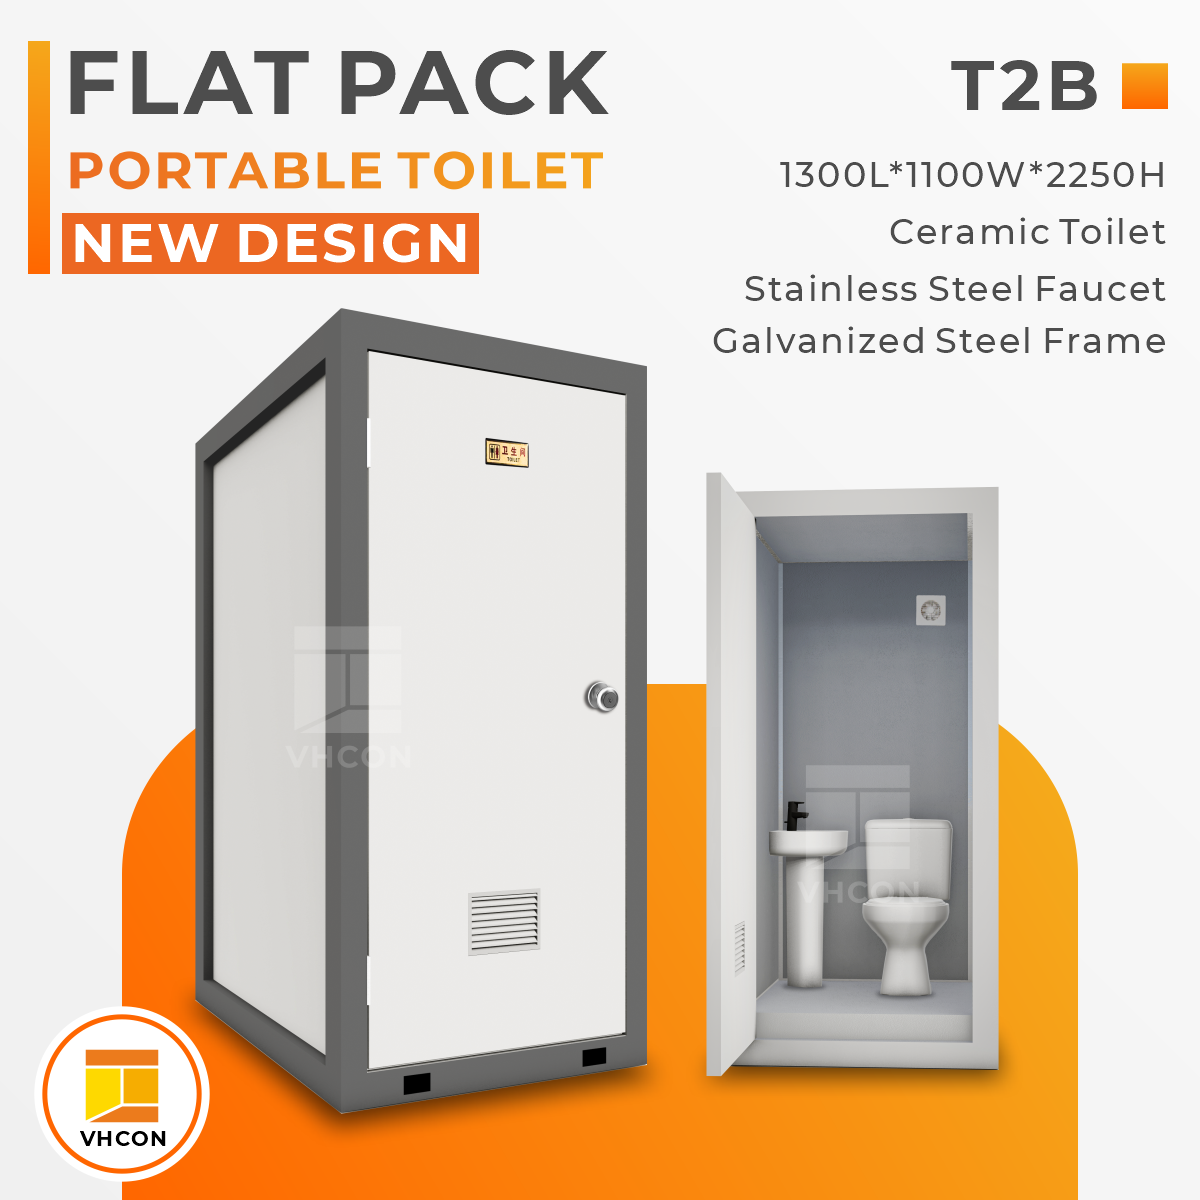 Kaluwihan Nggunakake Bingkai Baja Galvanis ing Toilet Flat Pack Portable